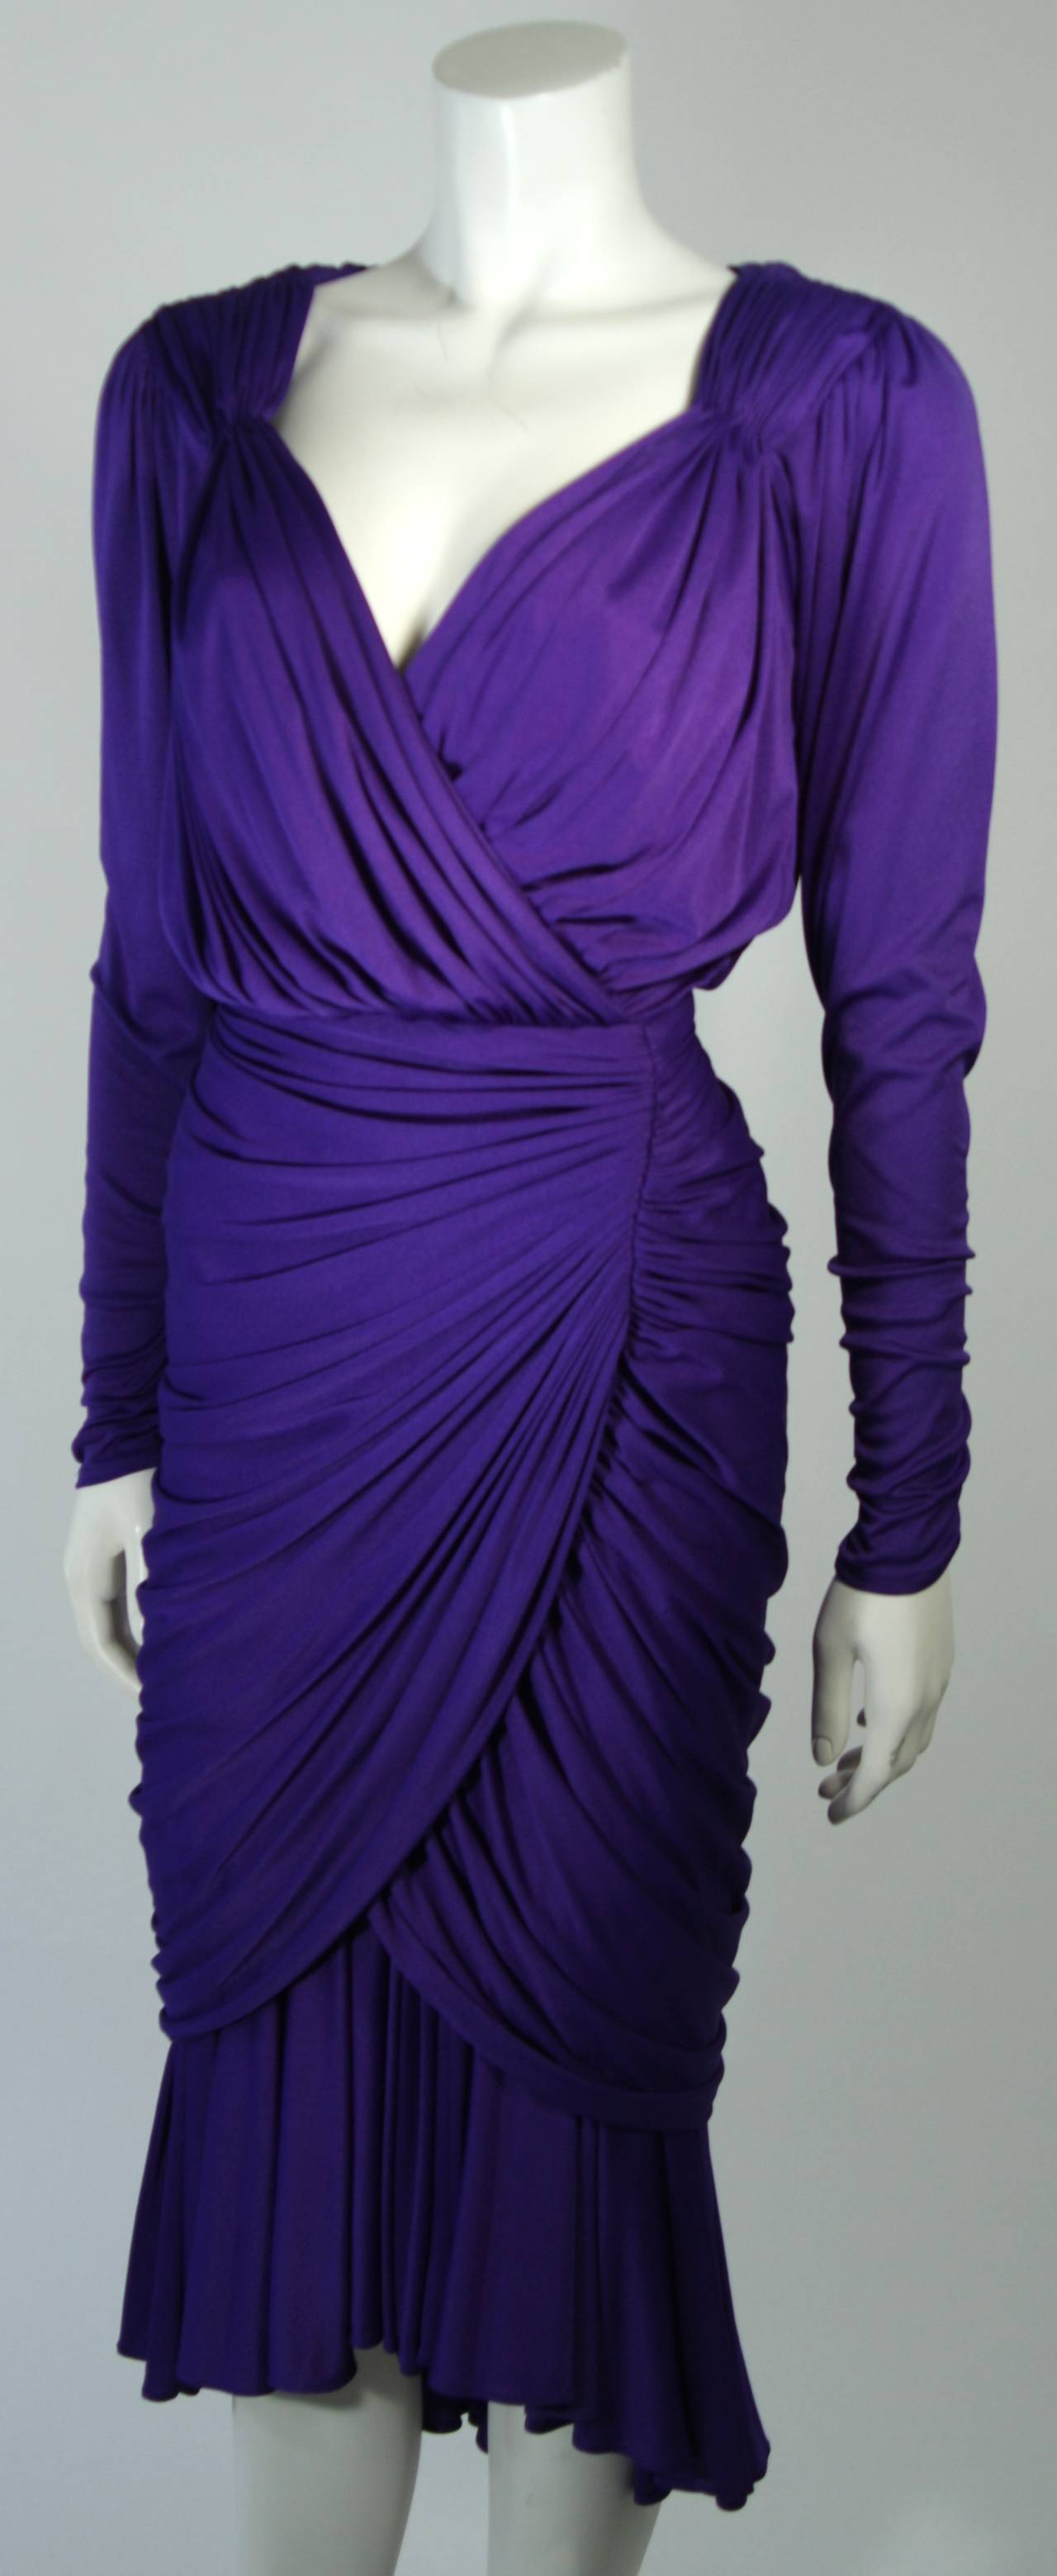 long sleeve purple dress